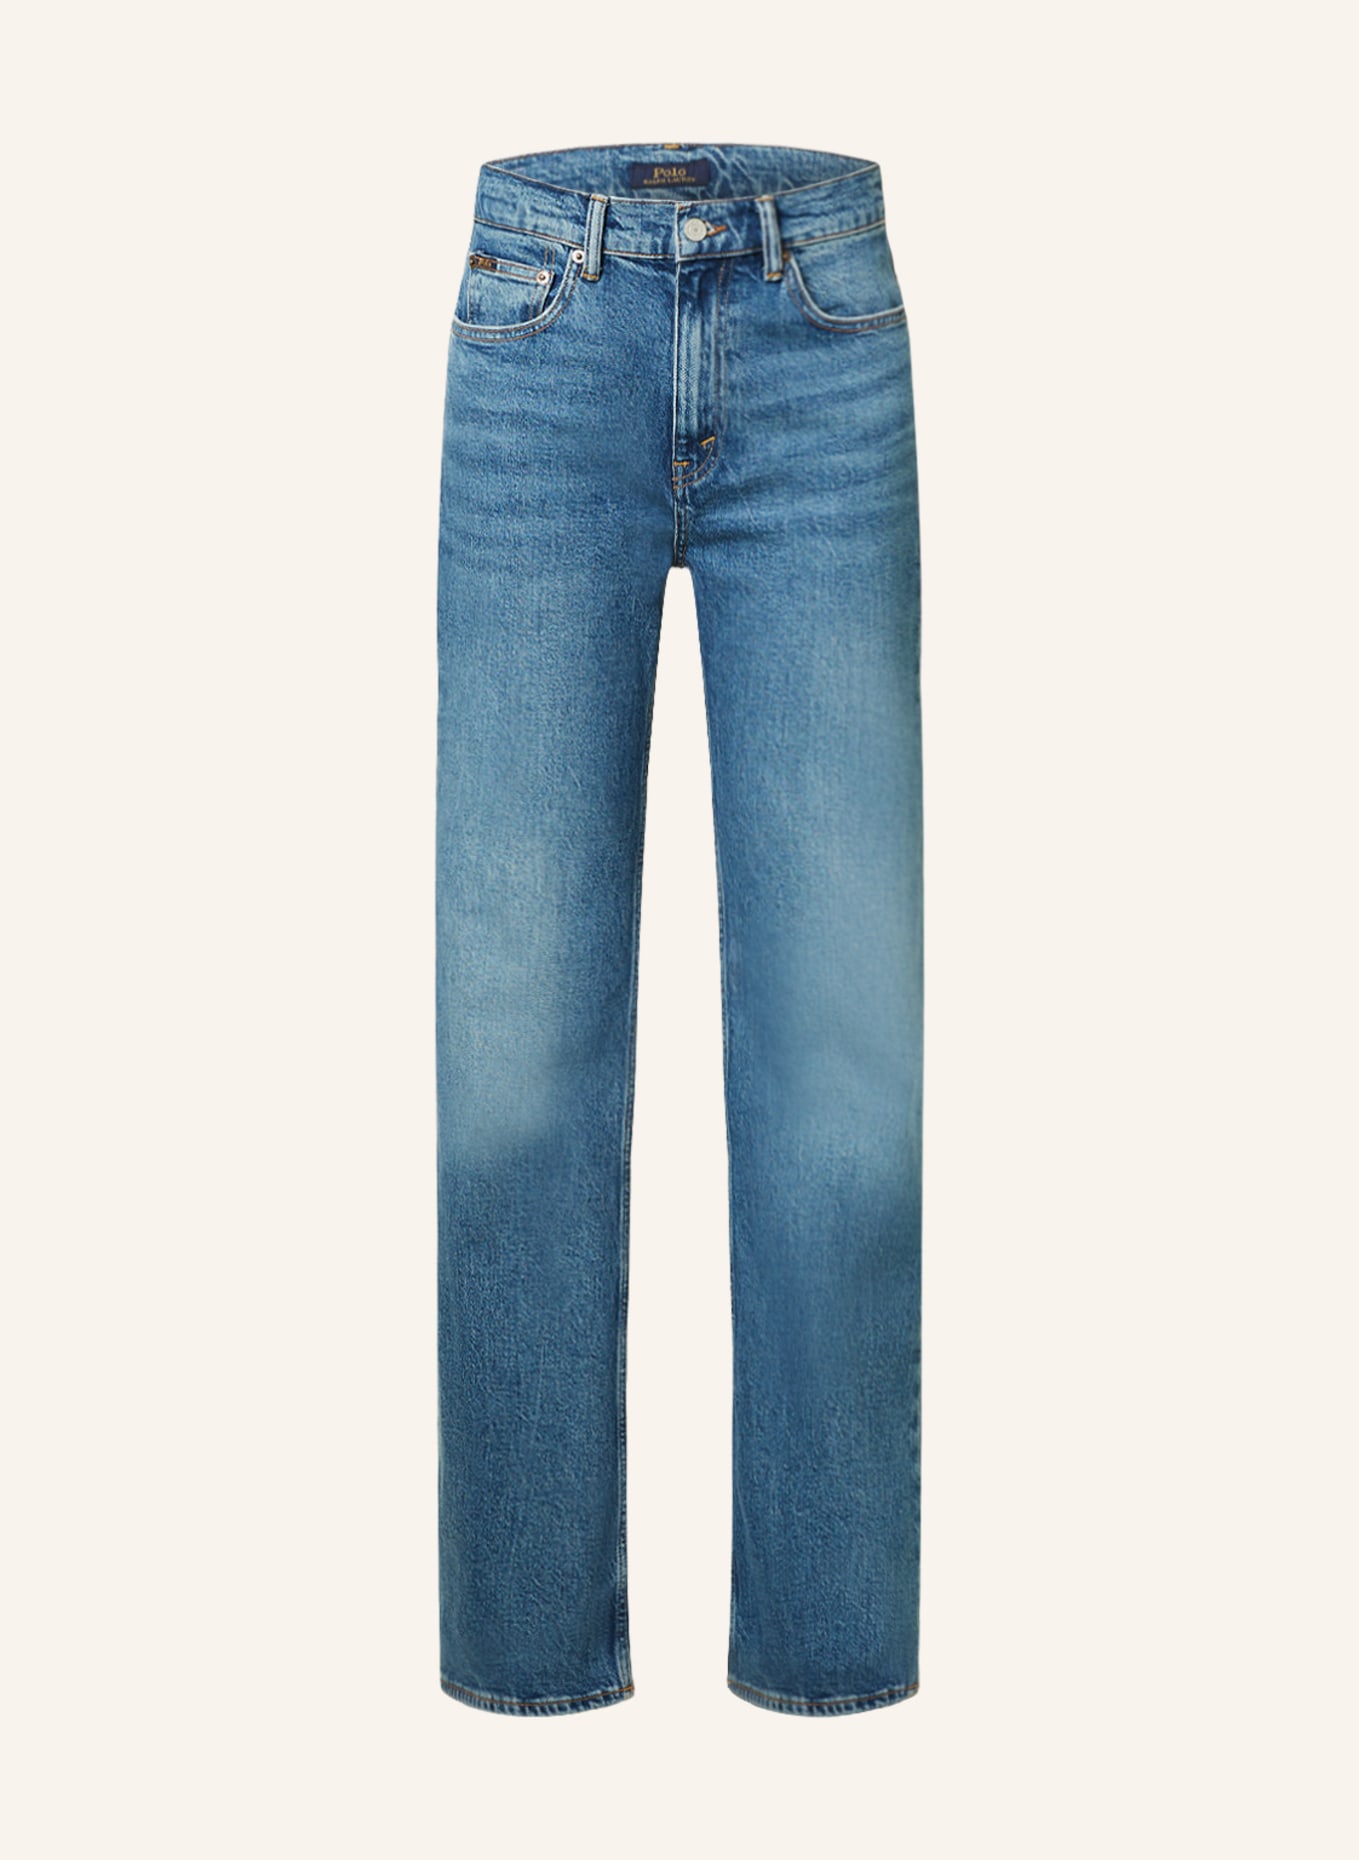 POLO RALPH LAUREN Flared Jeans, Farbe: 001 CECLIA WASH (Bild 1)